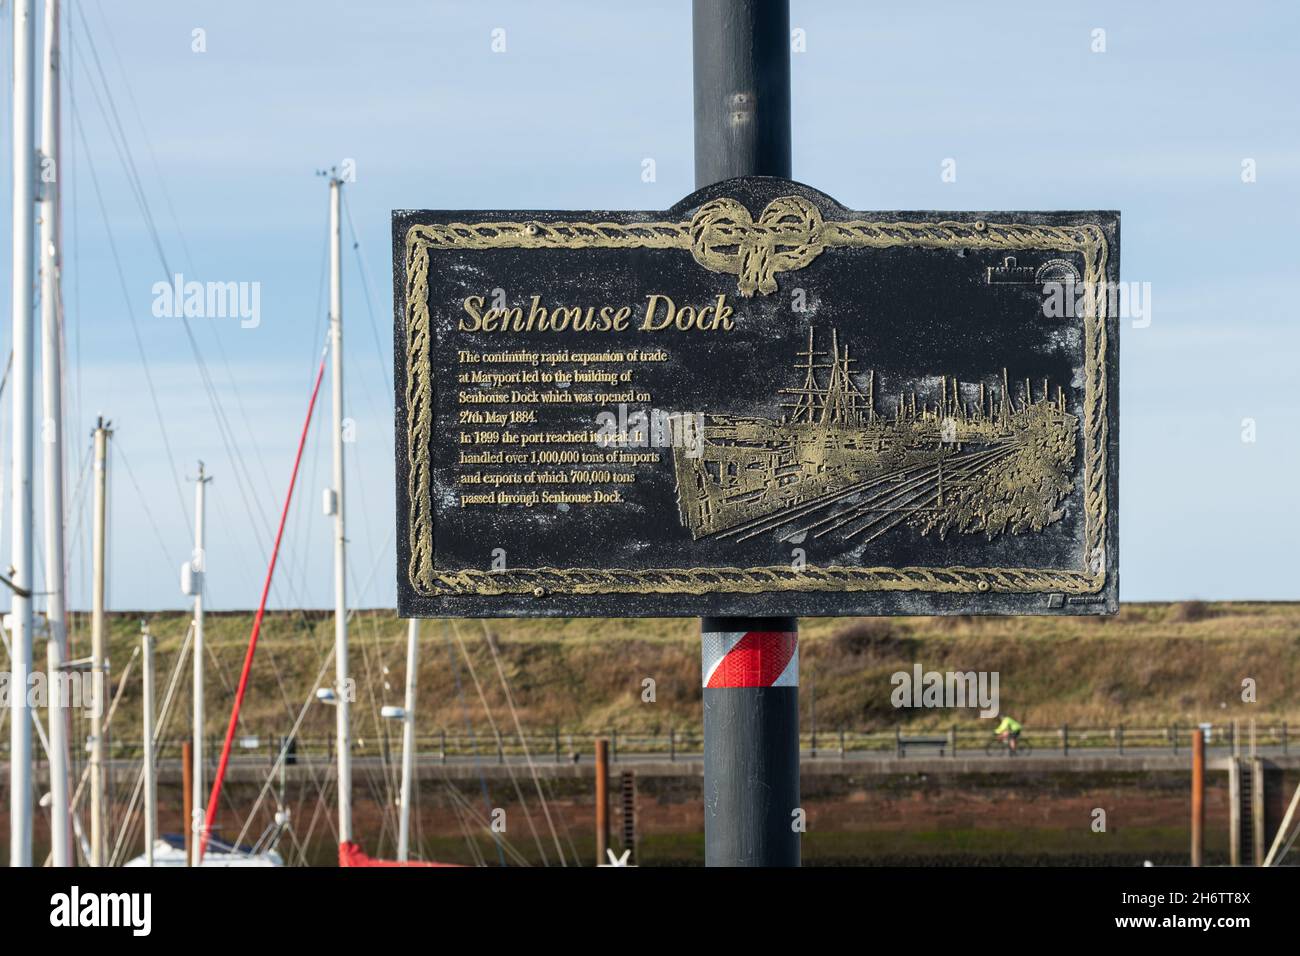 Panneau de Senhouse Dock ou panneau d'information donnant l'histoire du port à Maryport, Cumbria, Angleterre, Royaume-Uni Banque D'Images